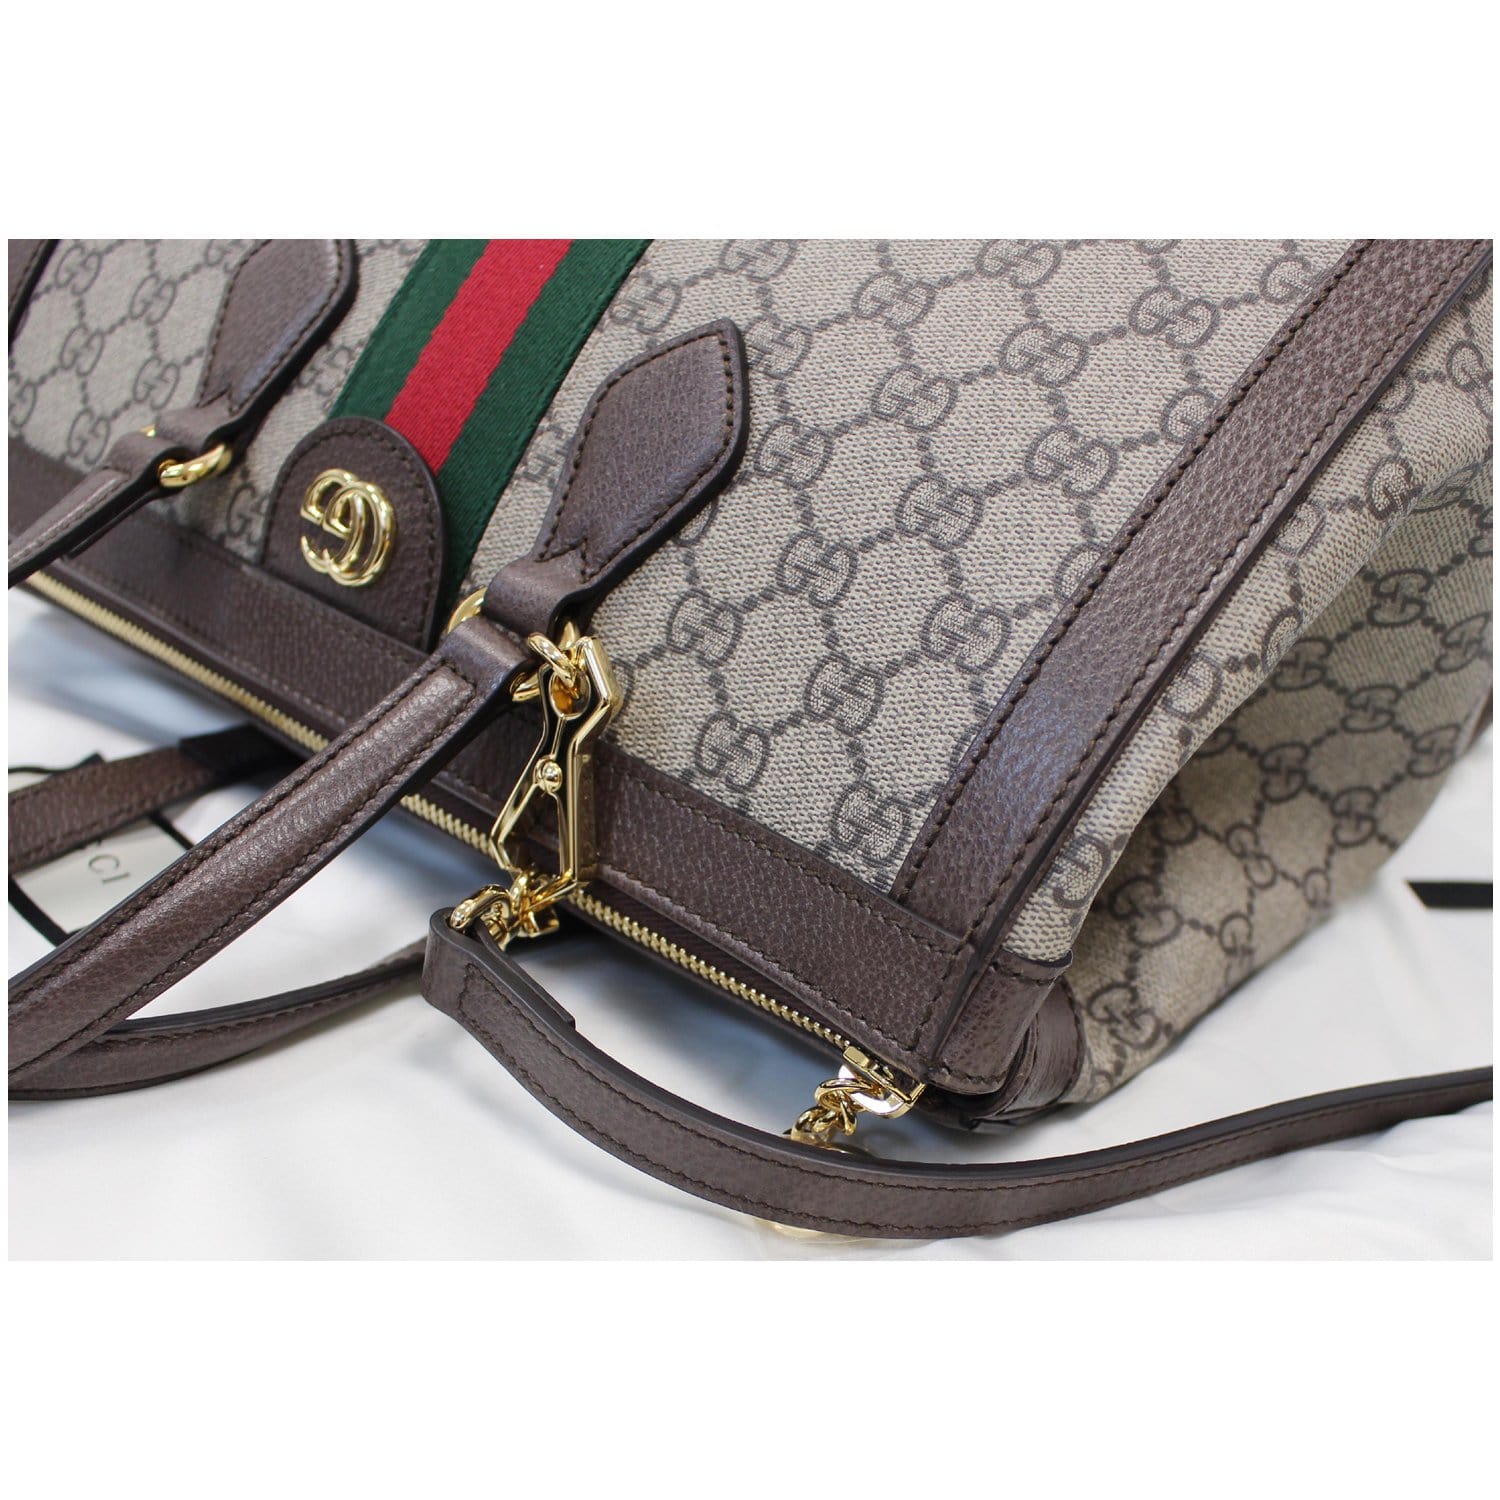 GUCCI - Handbags - Bags - Wallets - 104367733